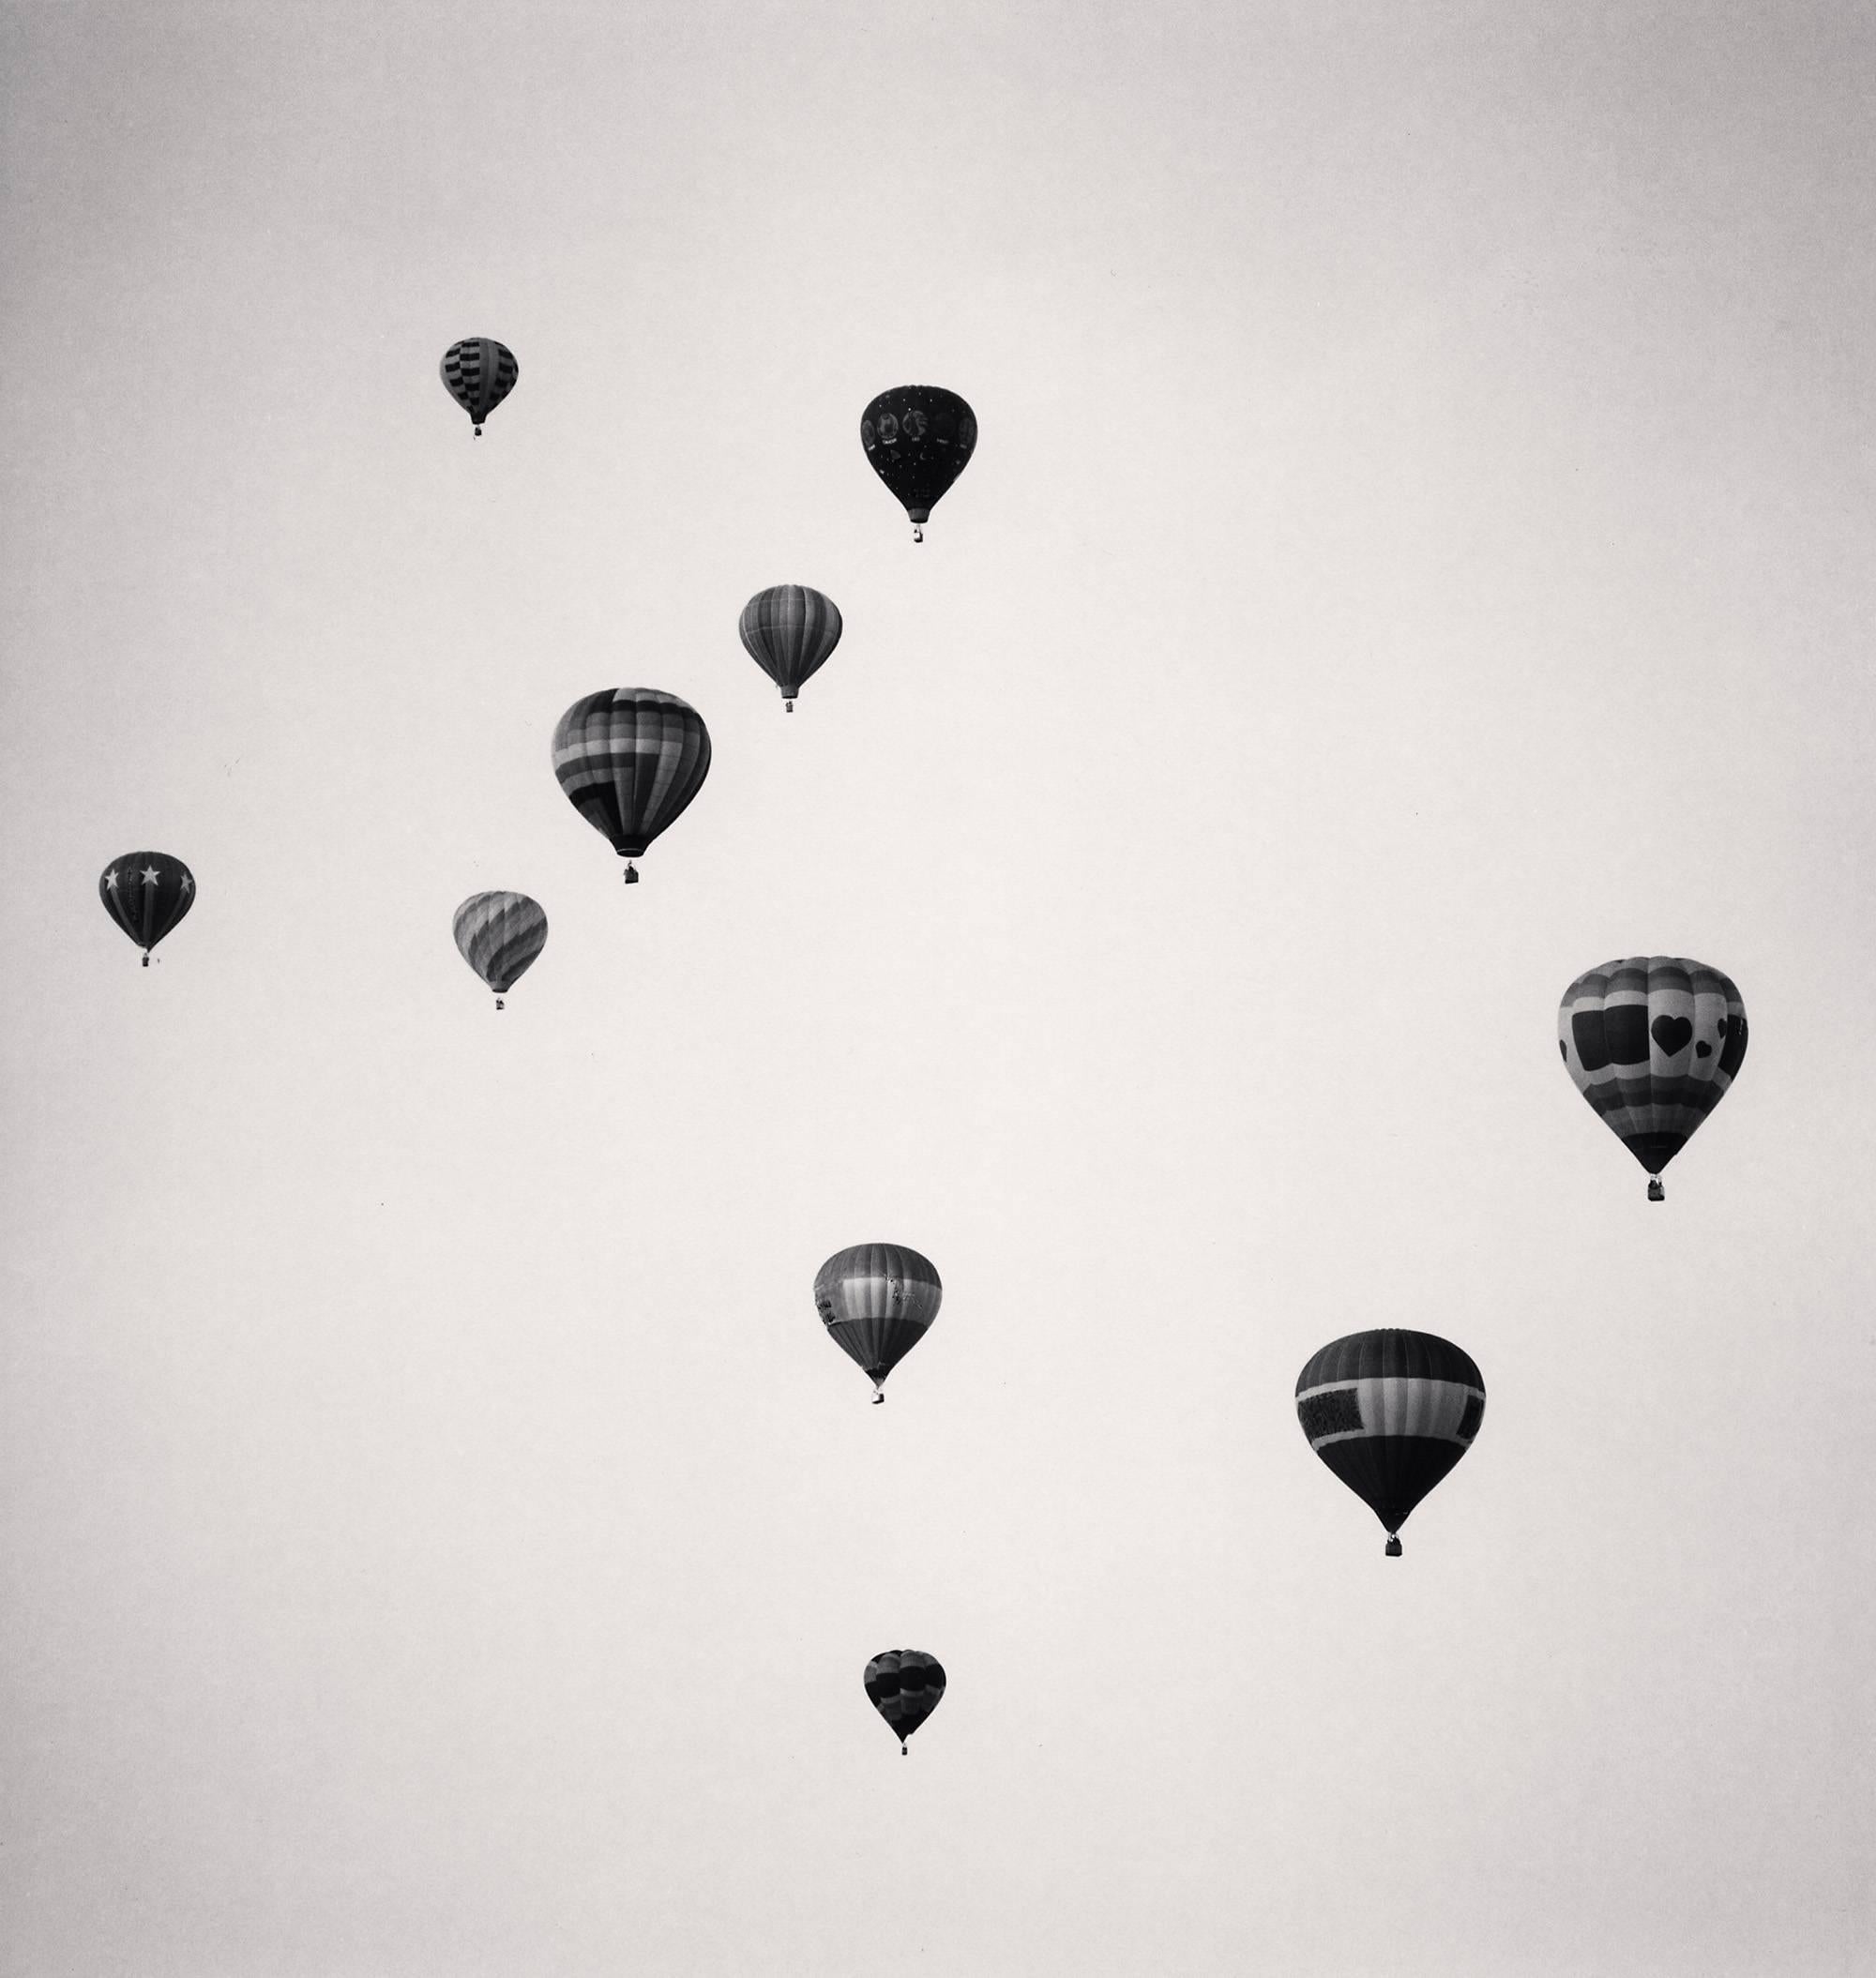 Michael Kenna Black and White Photograph – Zehn Ballons, Albuquerque, New Mexico, limitierte Auflage, Silbergelatinedruck